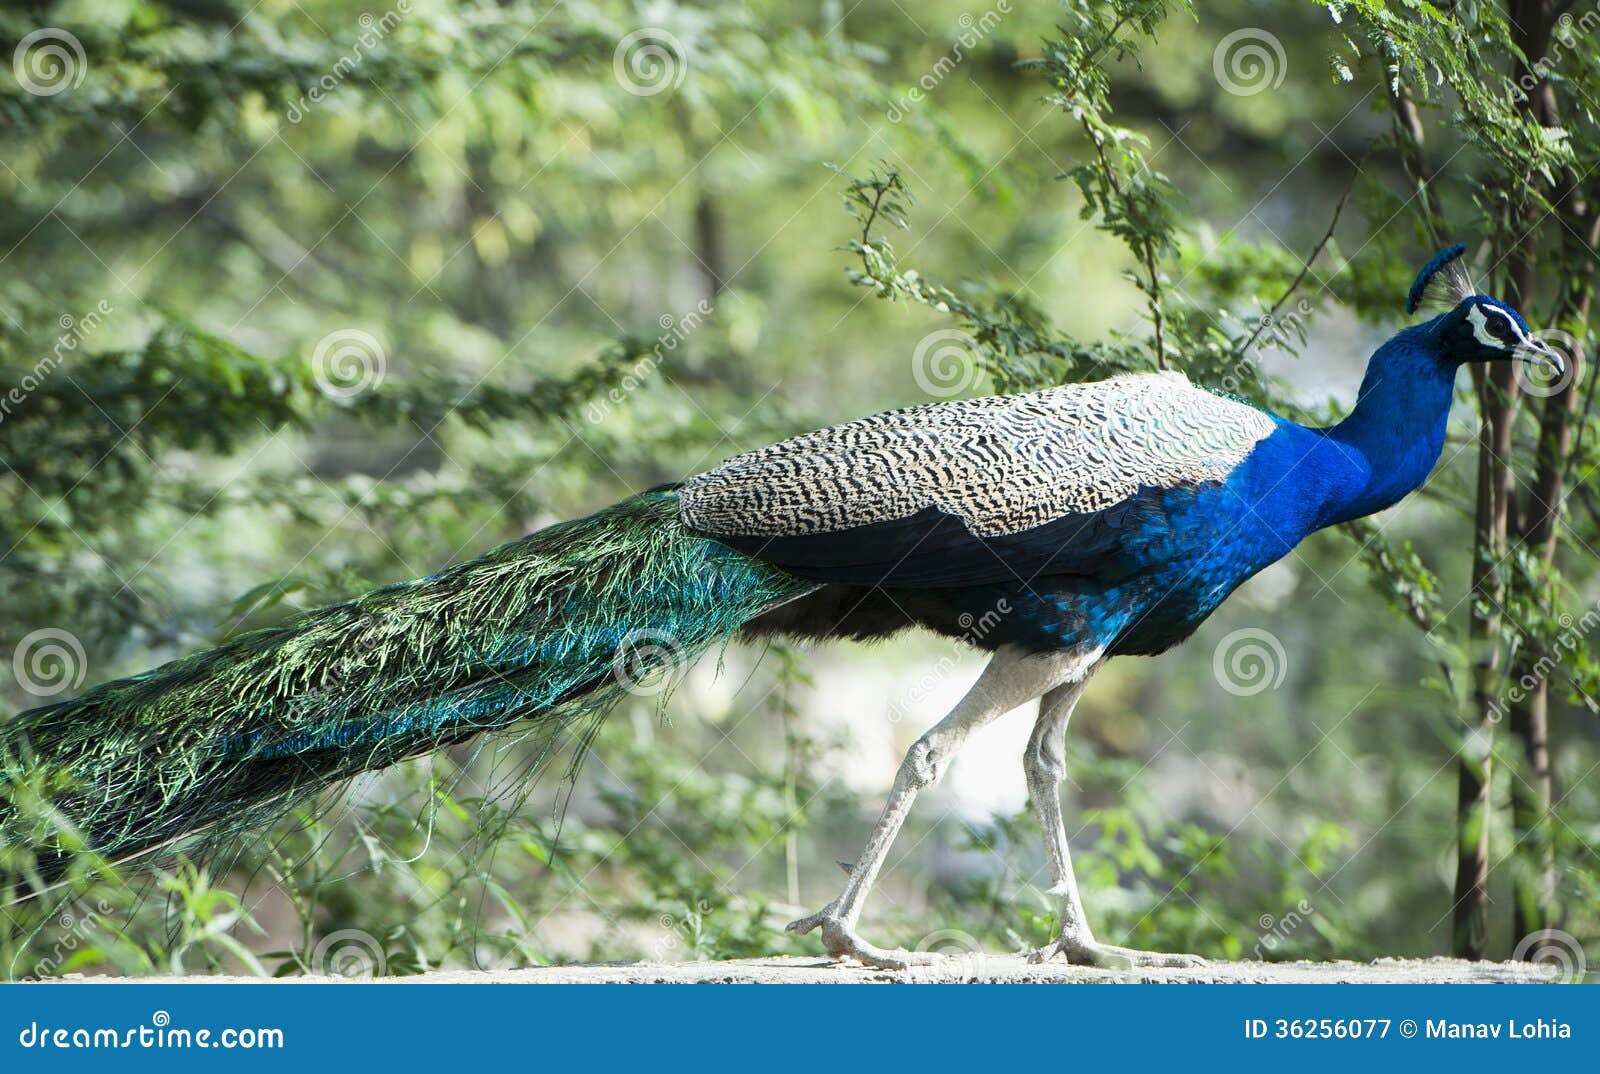 peacock, sohna, haryana, india